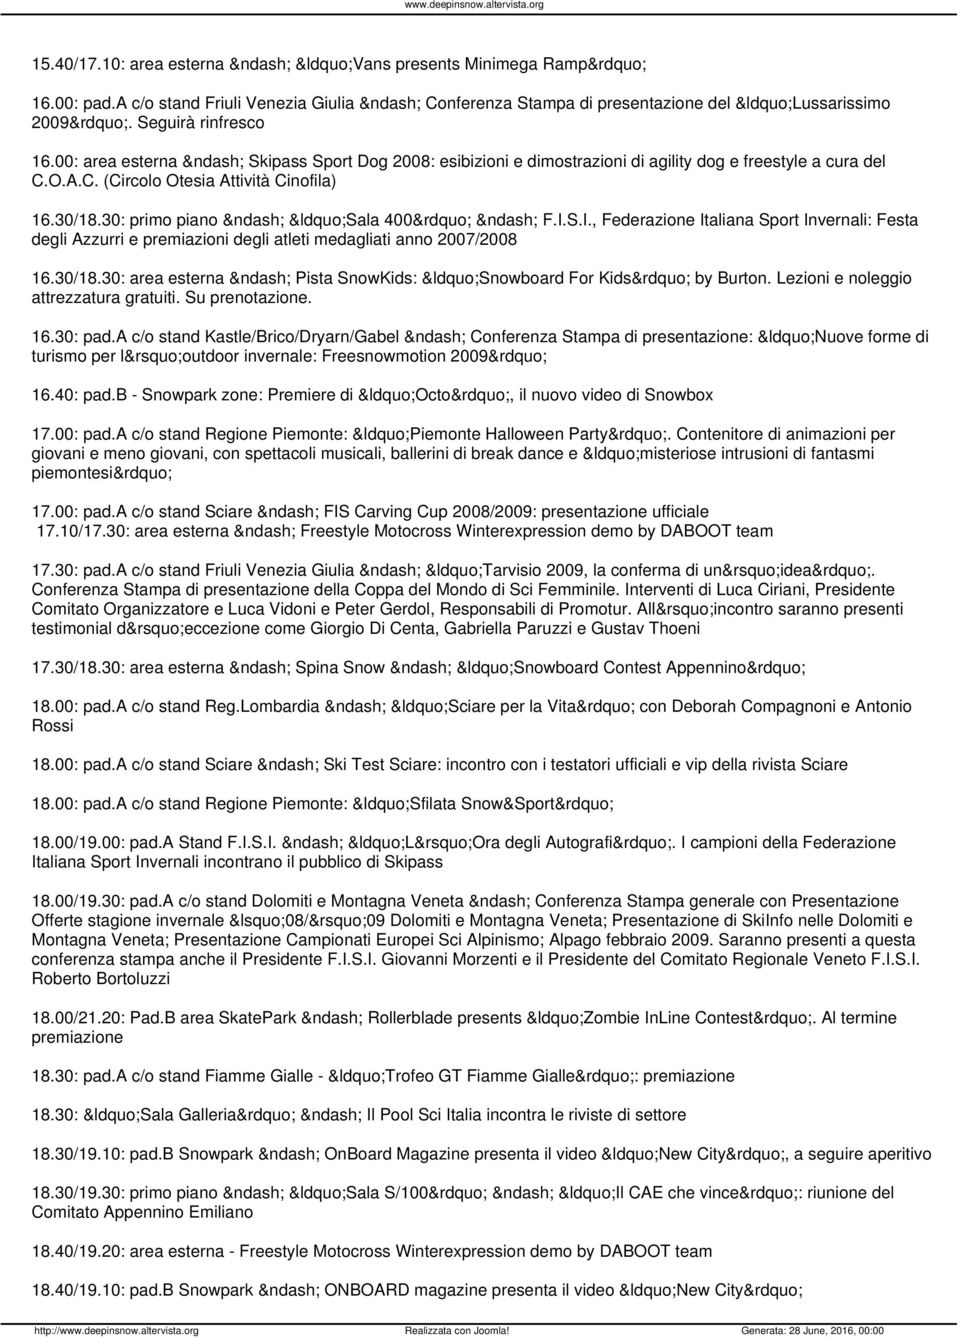 S.I., Federazione Italiana Sport Invernali: Festa degli Azzurri e premiazioni degli atleti medagliati anno 2007/2008 16.30/18.30: area esterna Pista SnowKids: Snowboard For Kids by Burton.